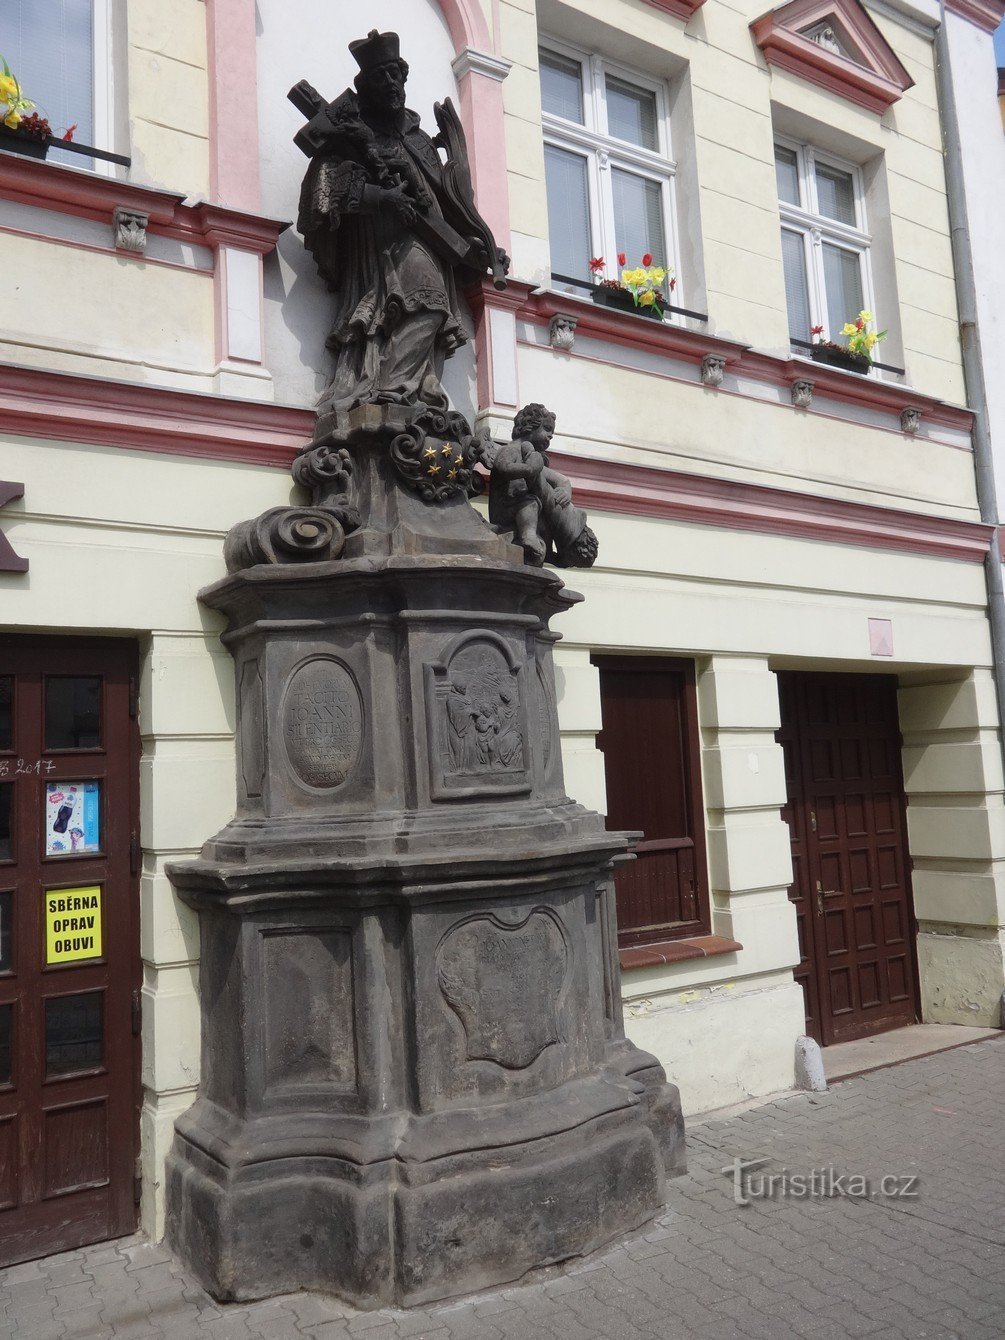 John (John) af Pomuk - St. Jan Nepomucký og hans statue i byen Osek